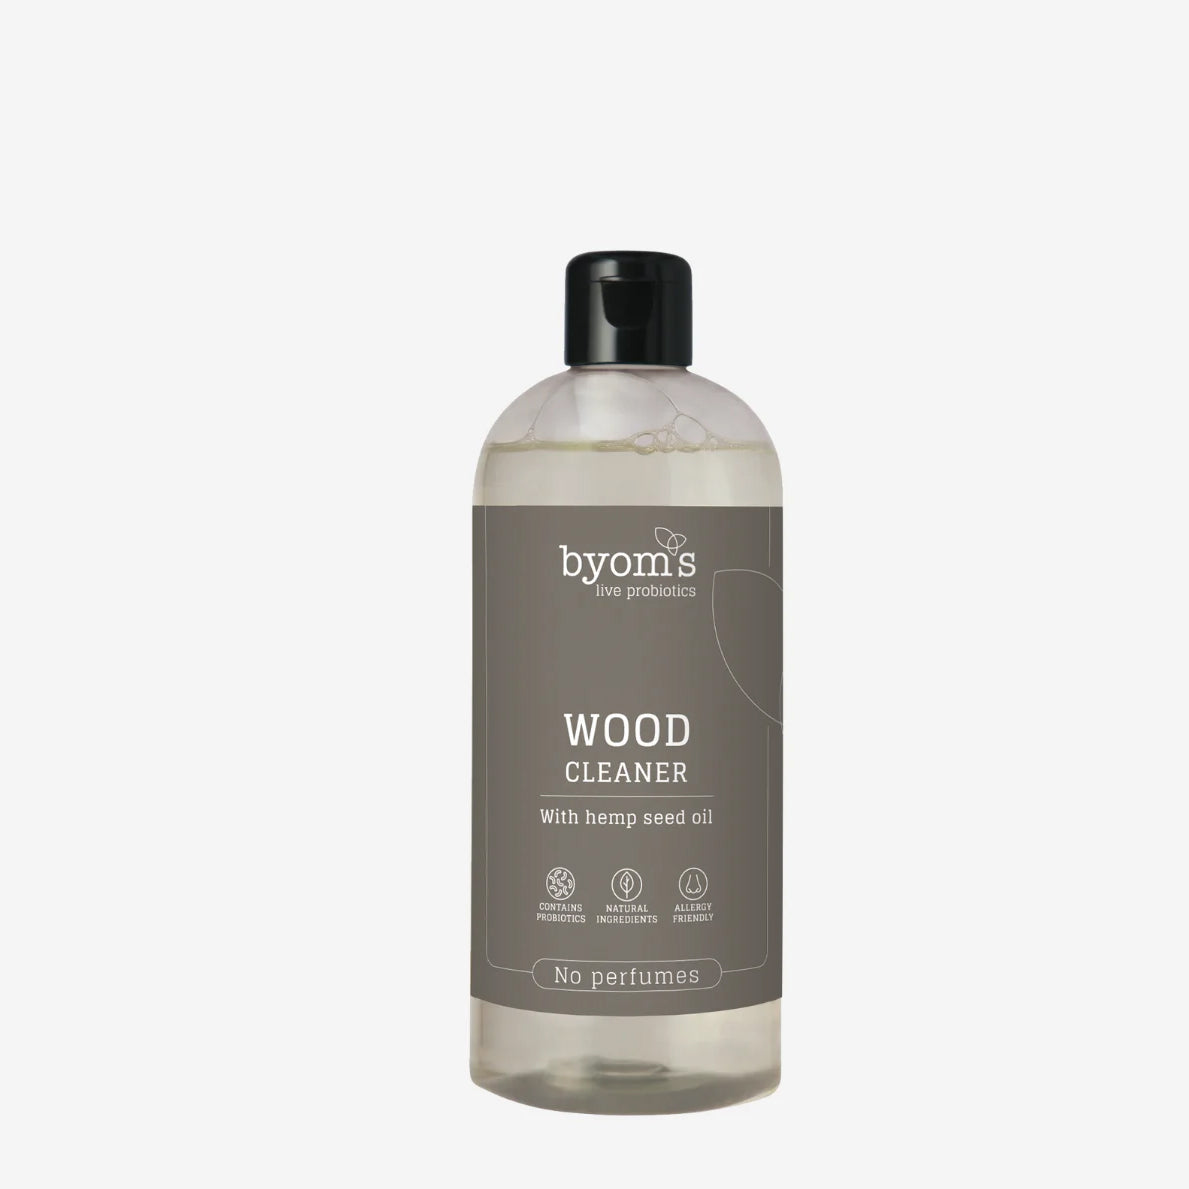 Billede af Probiotic Wood Cleaner 1:50 - Hemp Seed Oil - No Perfumes, 400 ml.